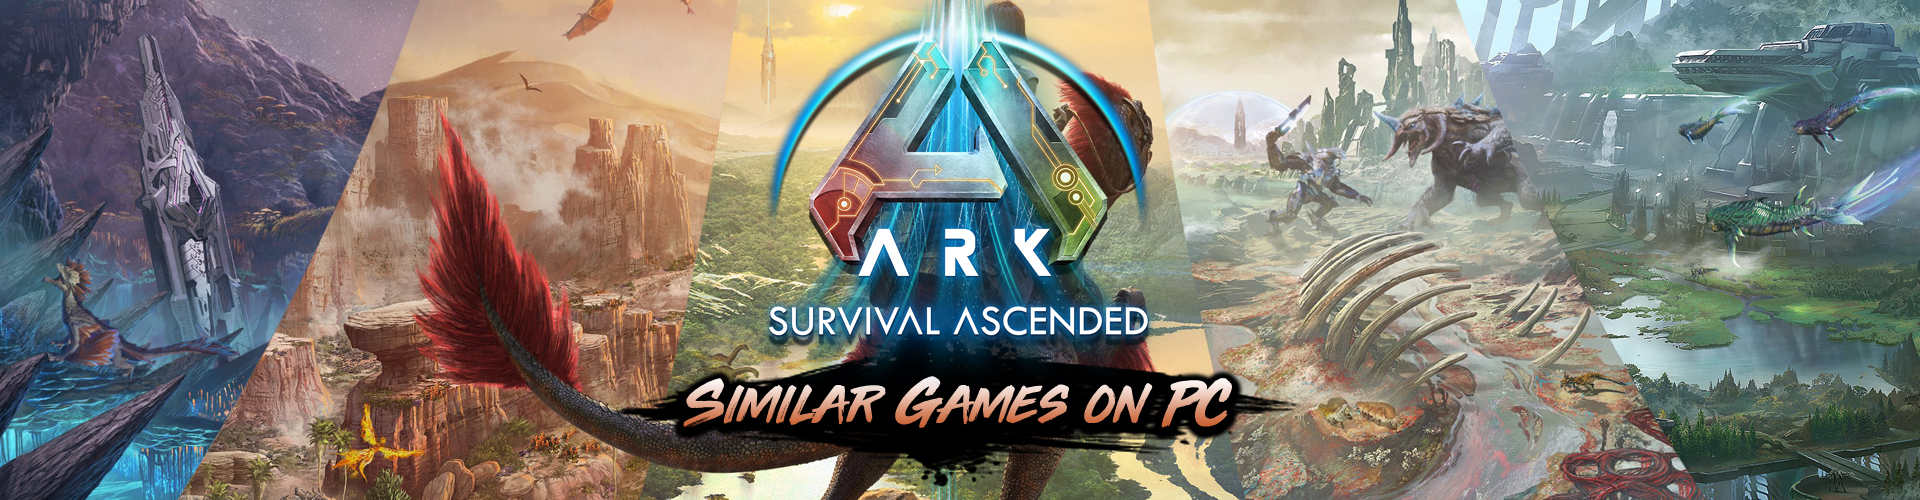 Top 20 Juegos de PC Como ARK Survival Ascended